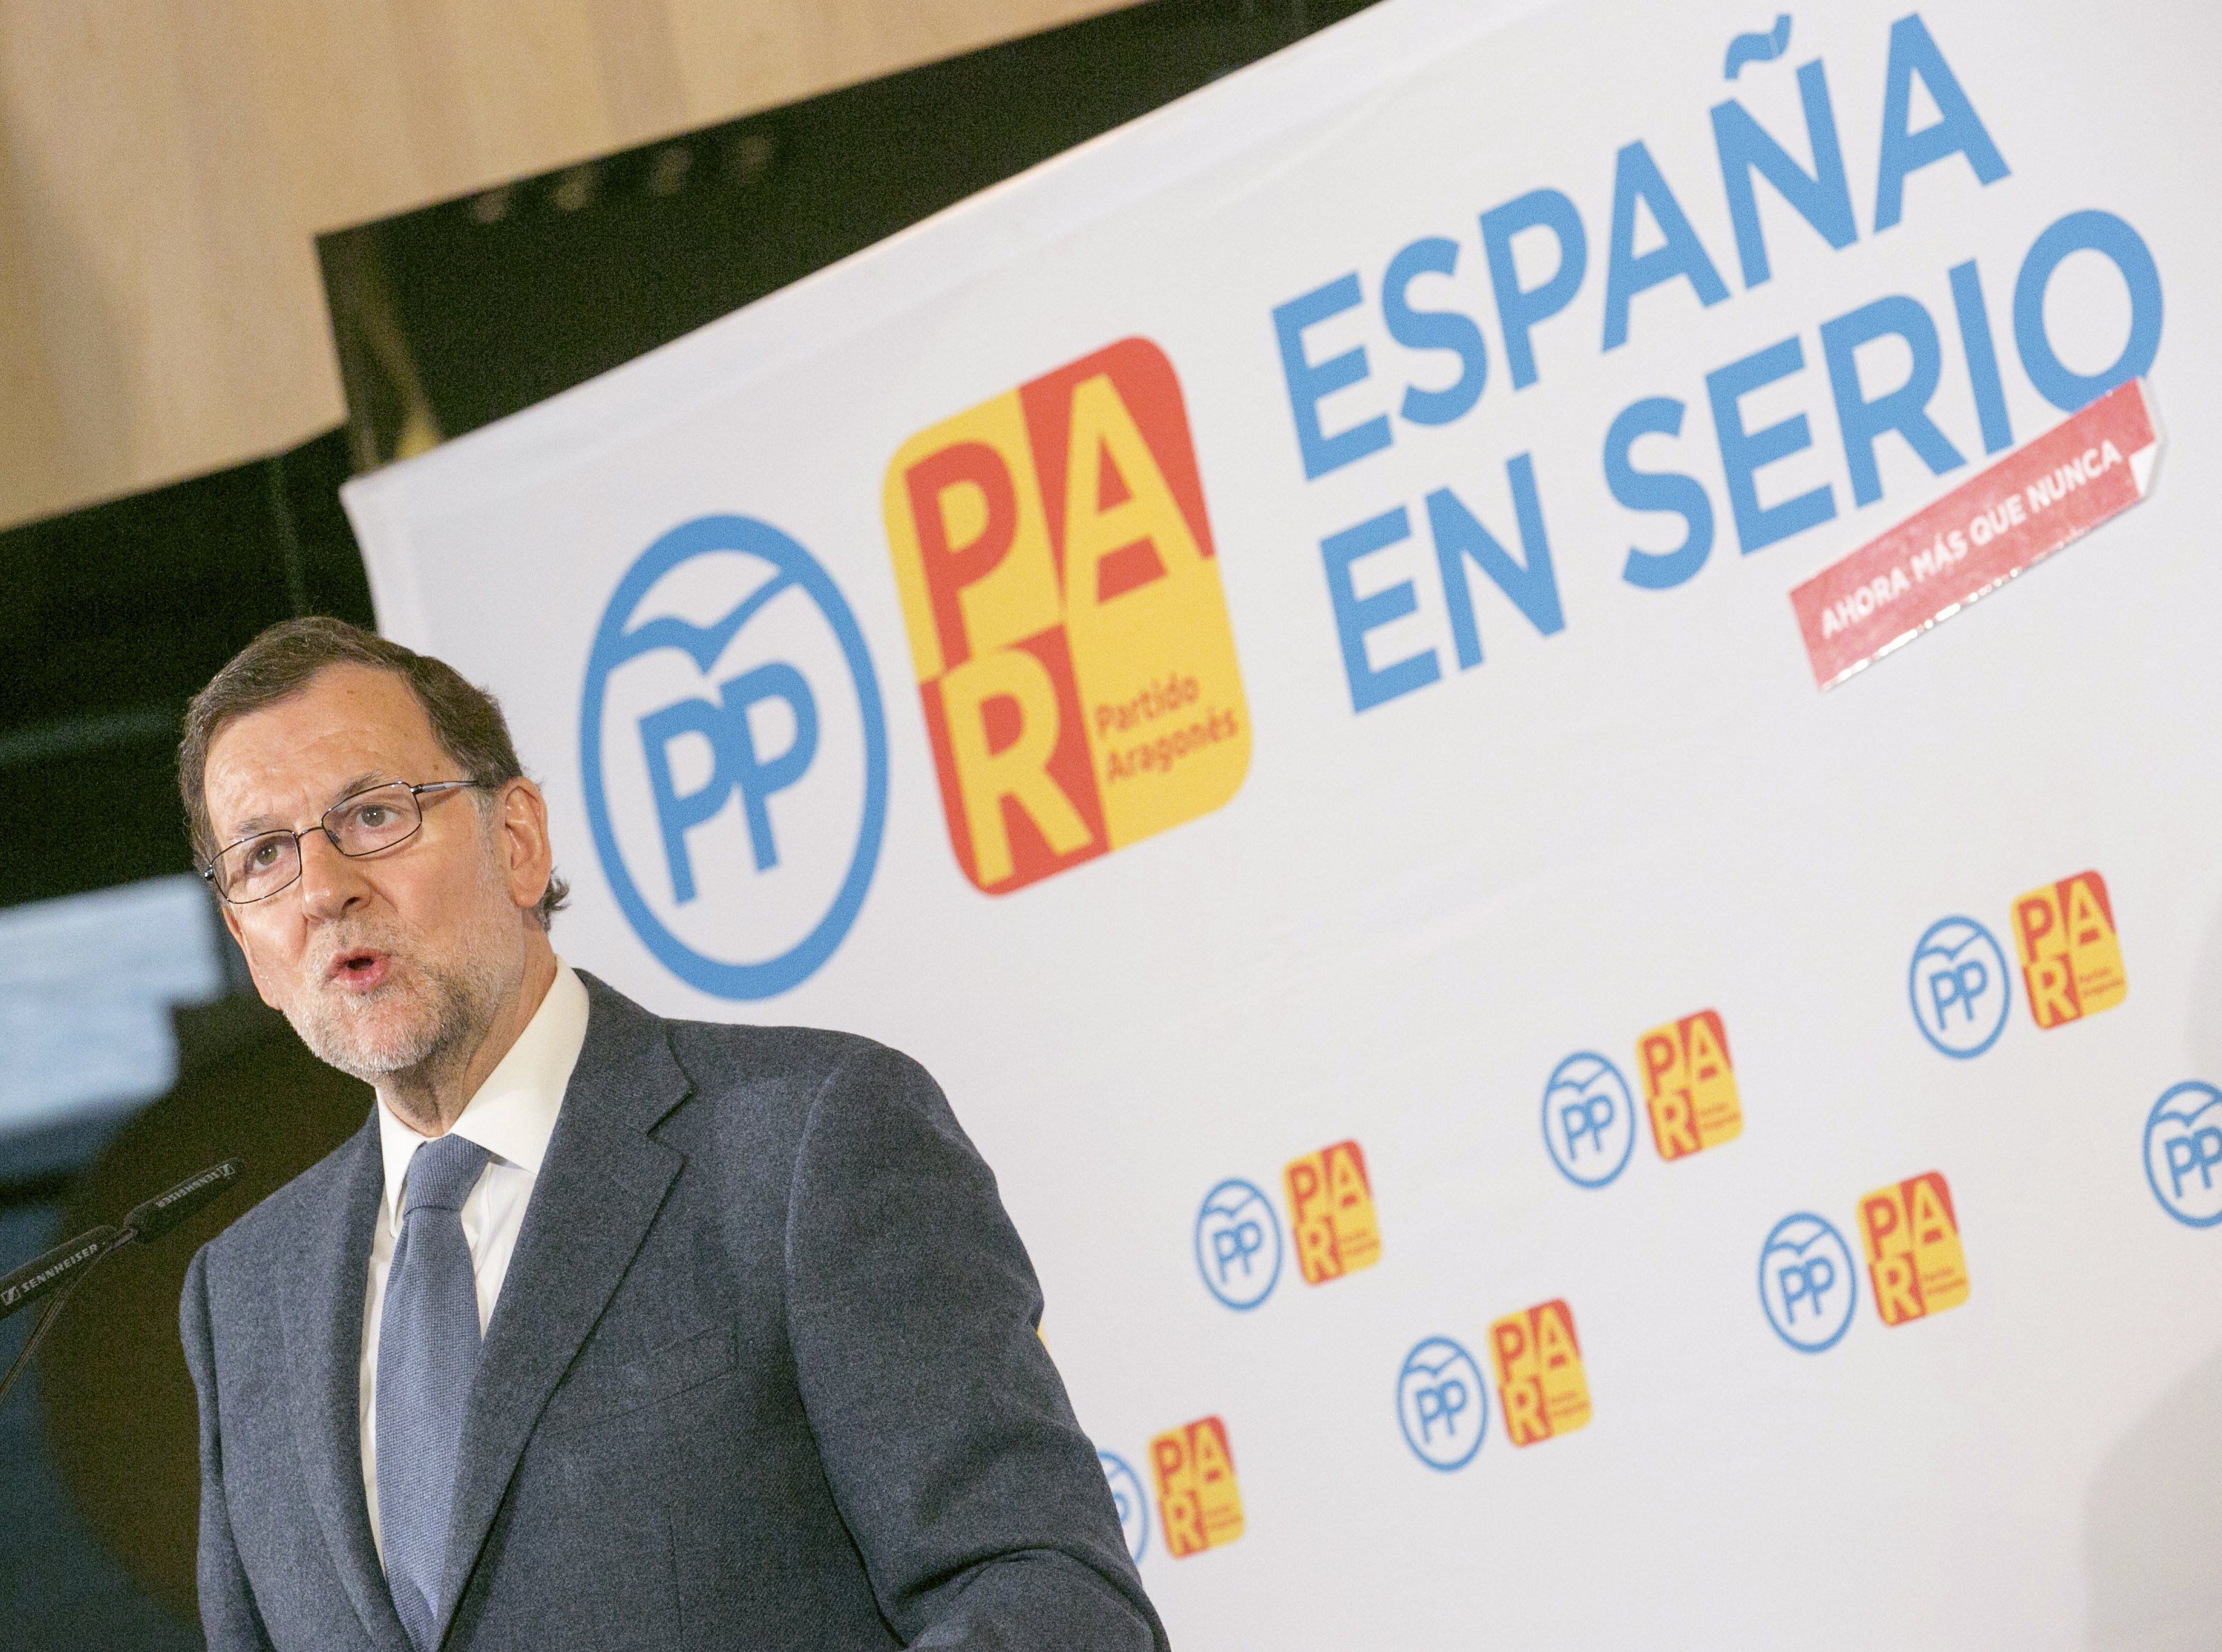 Rajoy atia el fantasma de la por contra "els governs extremistes"